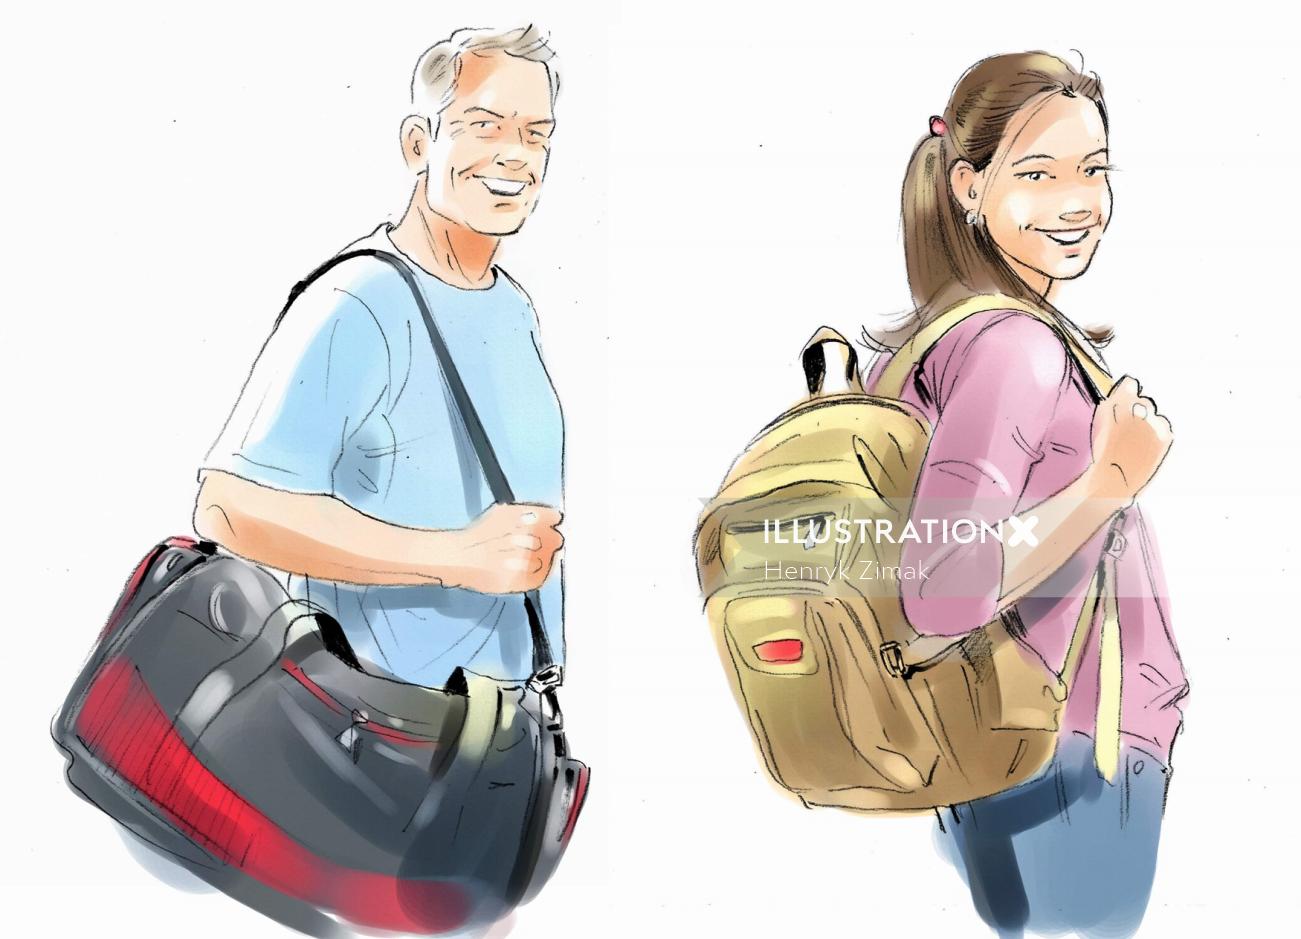 art of men and girl holding bag